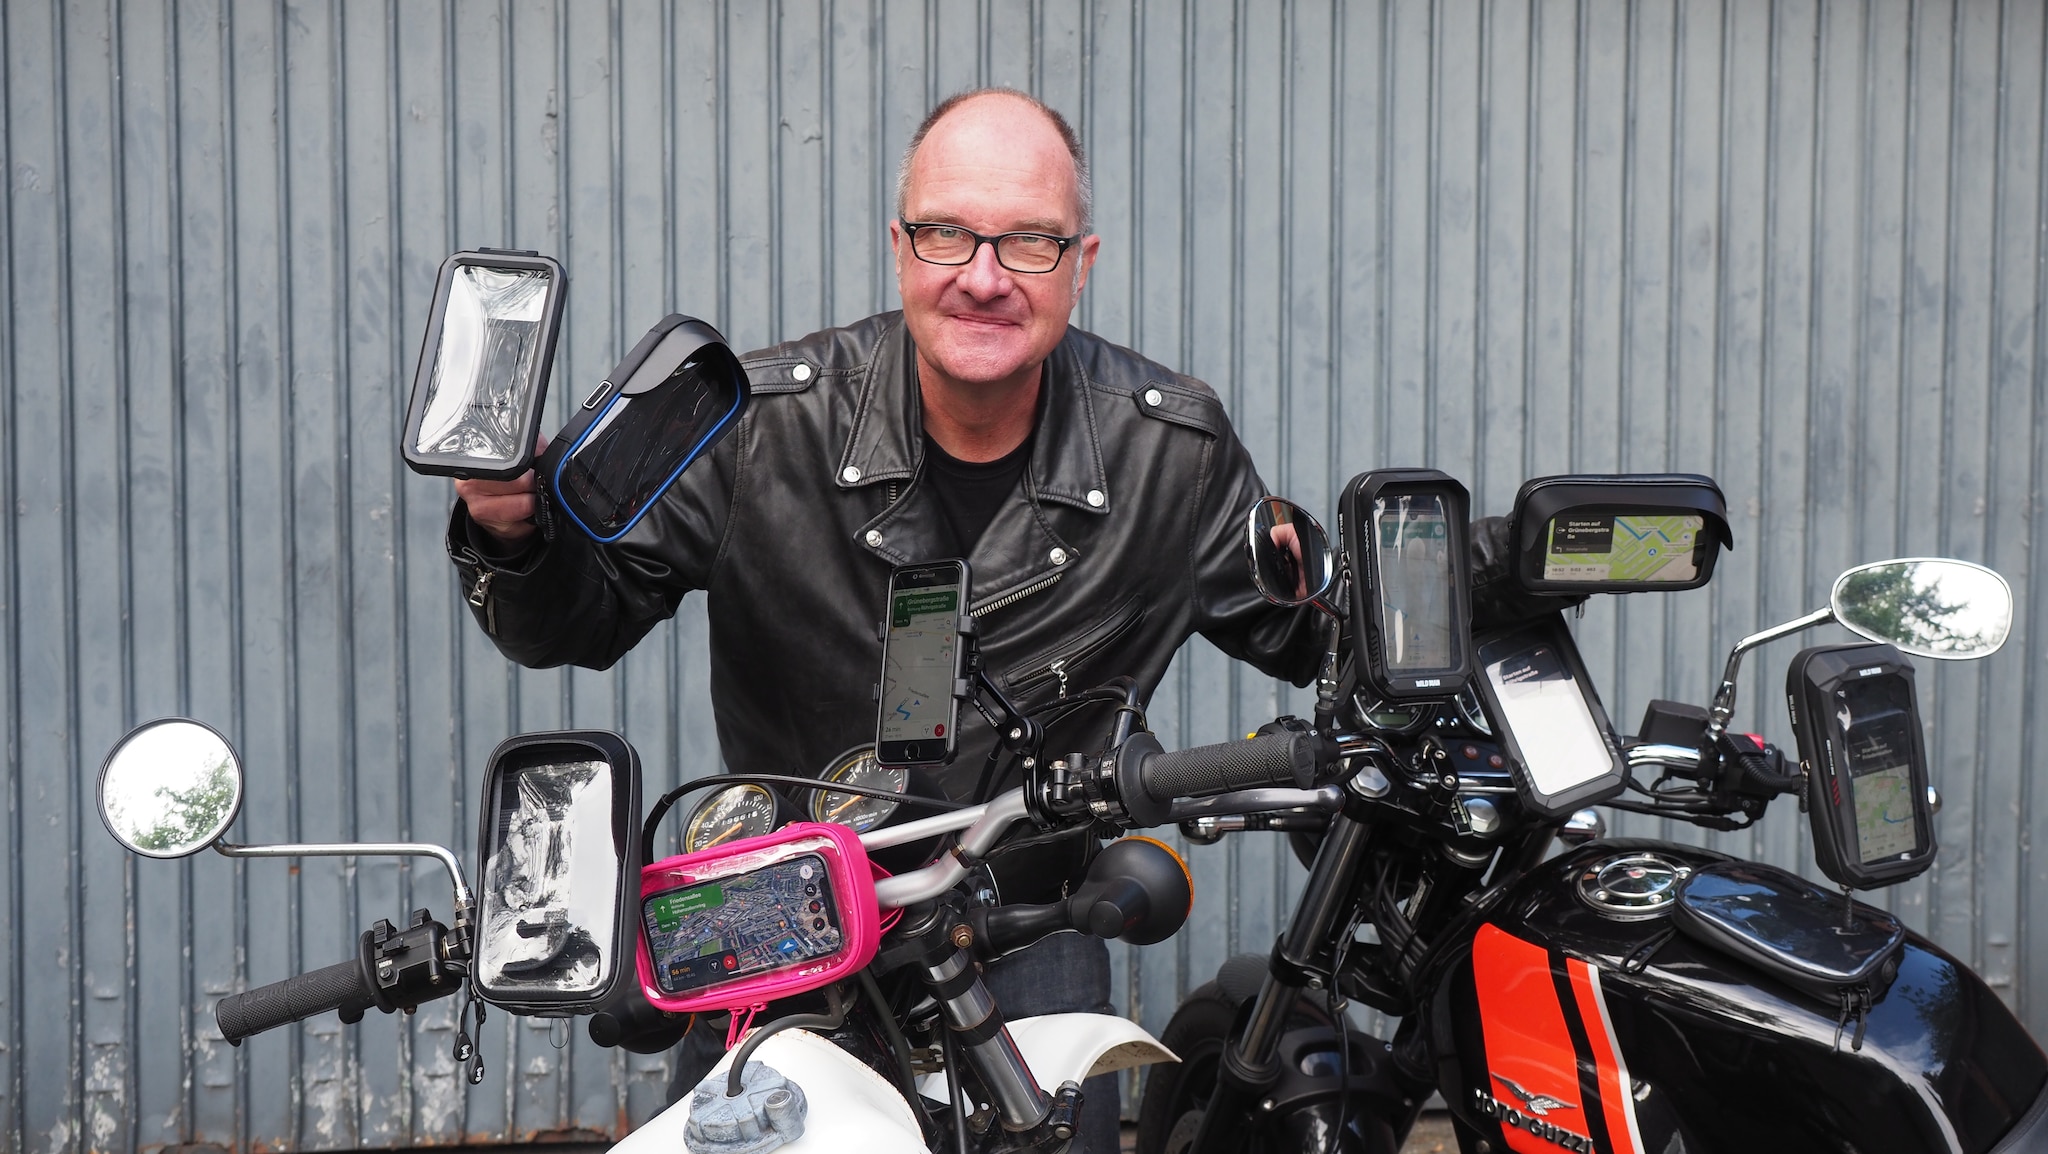 360° Handy Halterung Smartphone Motorrad Wasserdicht bis 6,7 Zoll